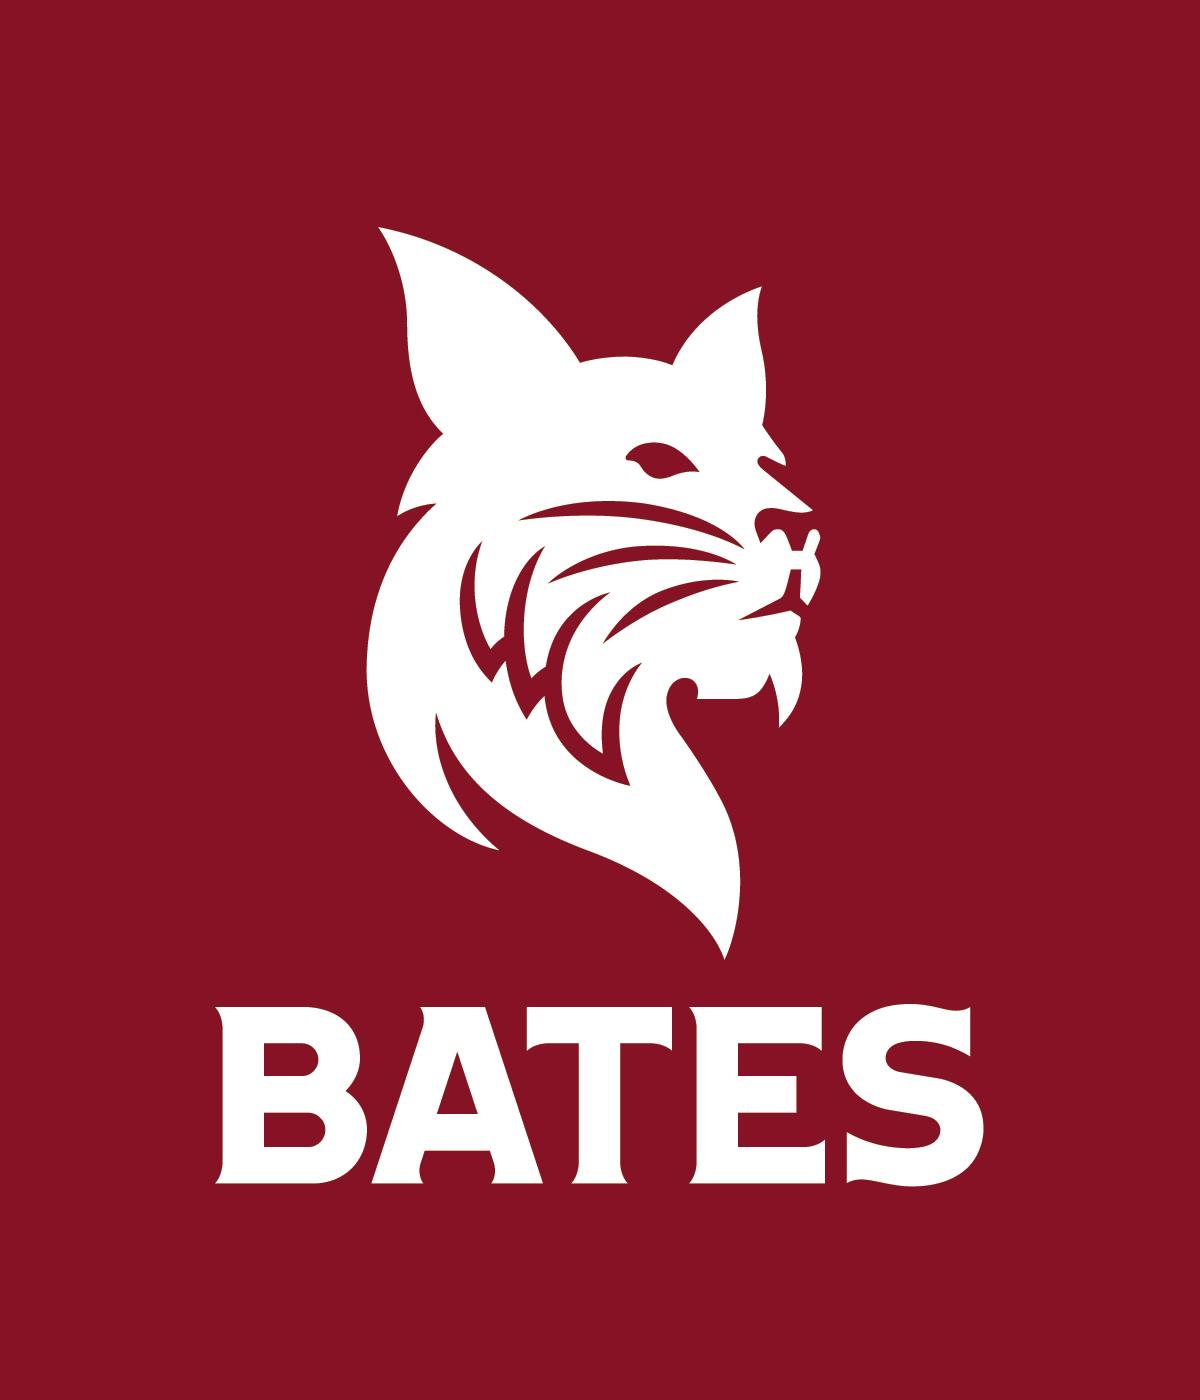 batems Logo photo - 1